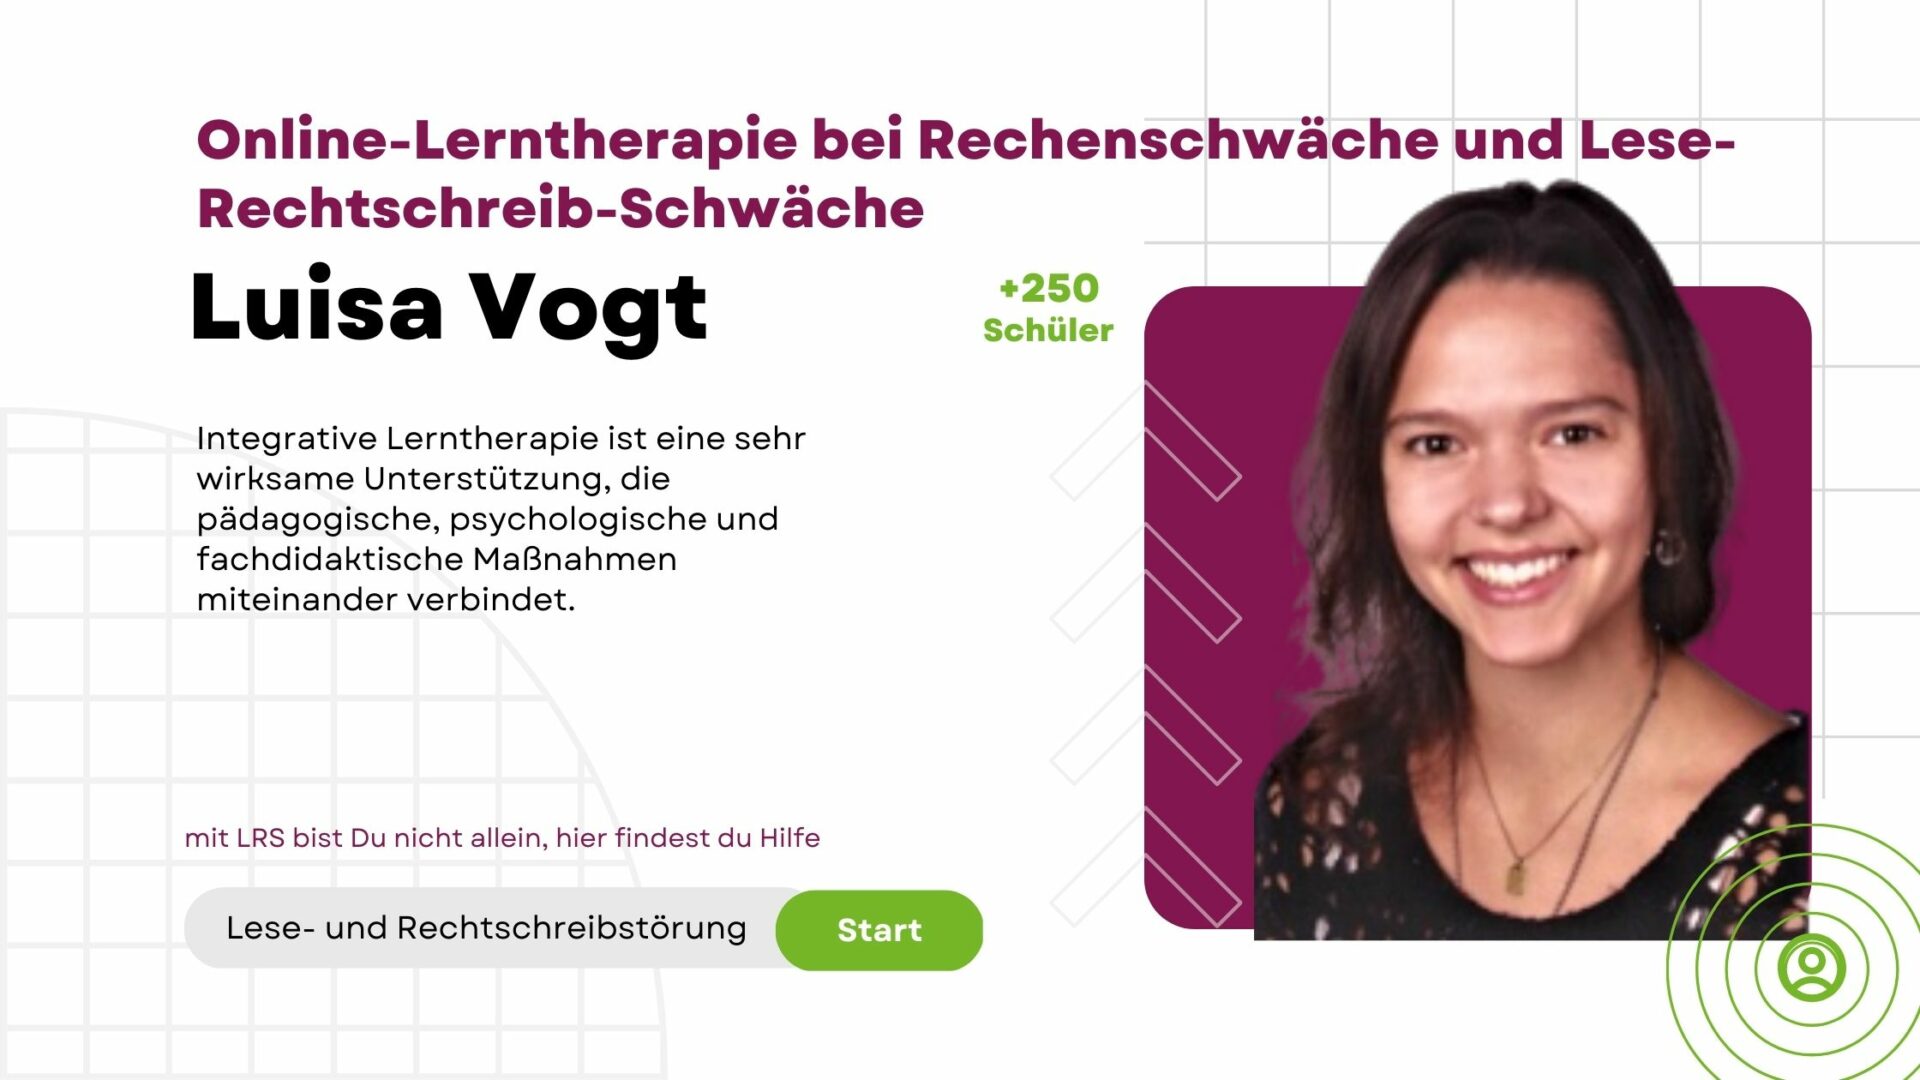 Luisa Vogt - Online-Lerntherapie bei Rechenschwäche und Lese-Rechtschreib-Schwäche